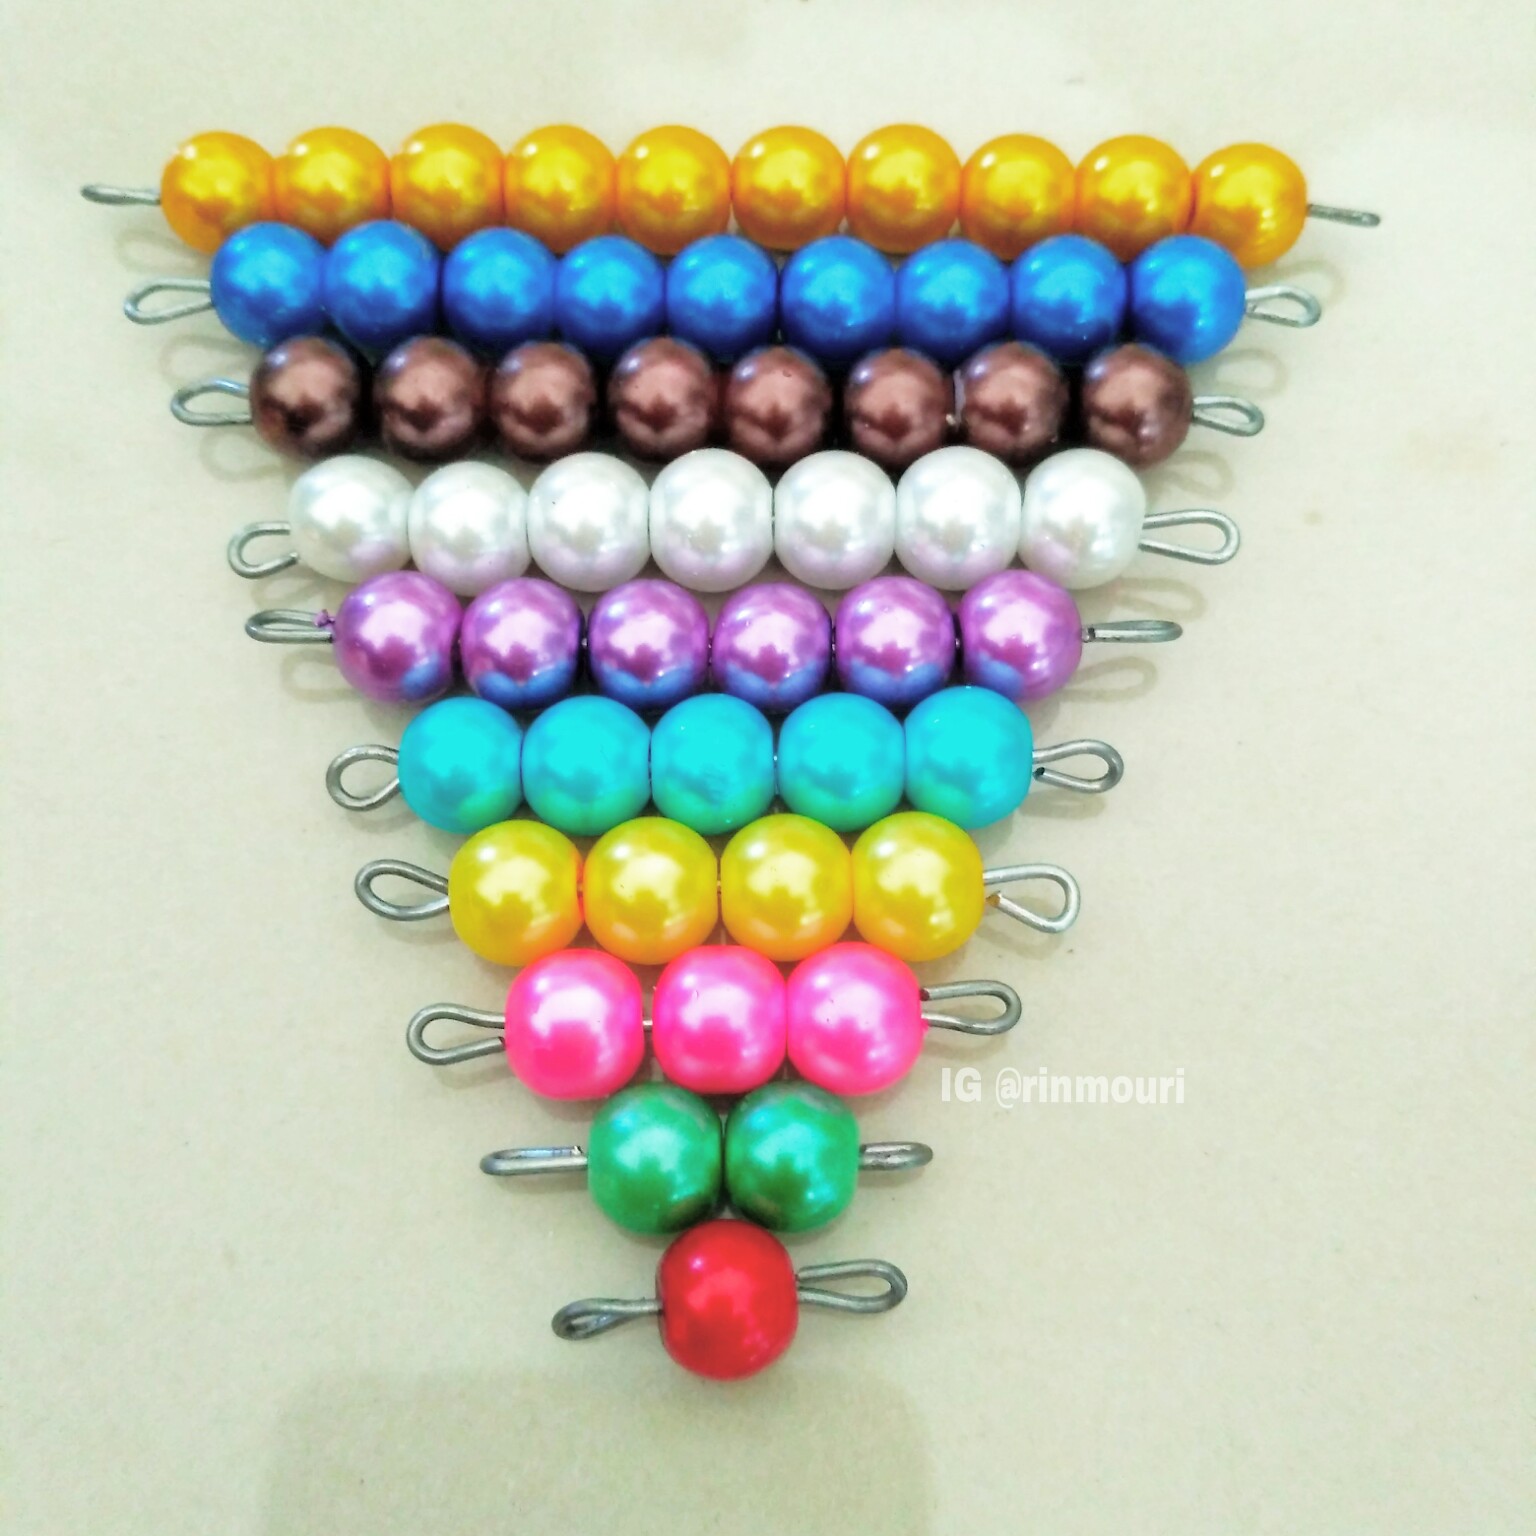 Bilal membantu membuat short beads stair Montessori Alat ini adalah salah satu alat yang digunakan dalam metode Montessori di area matematika